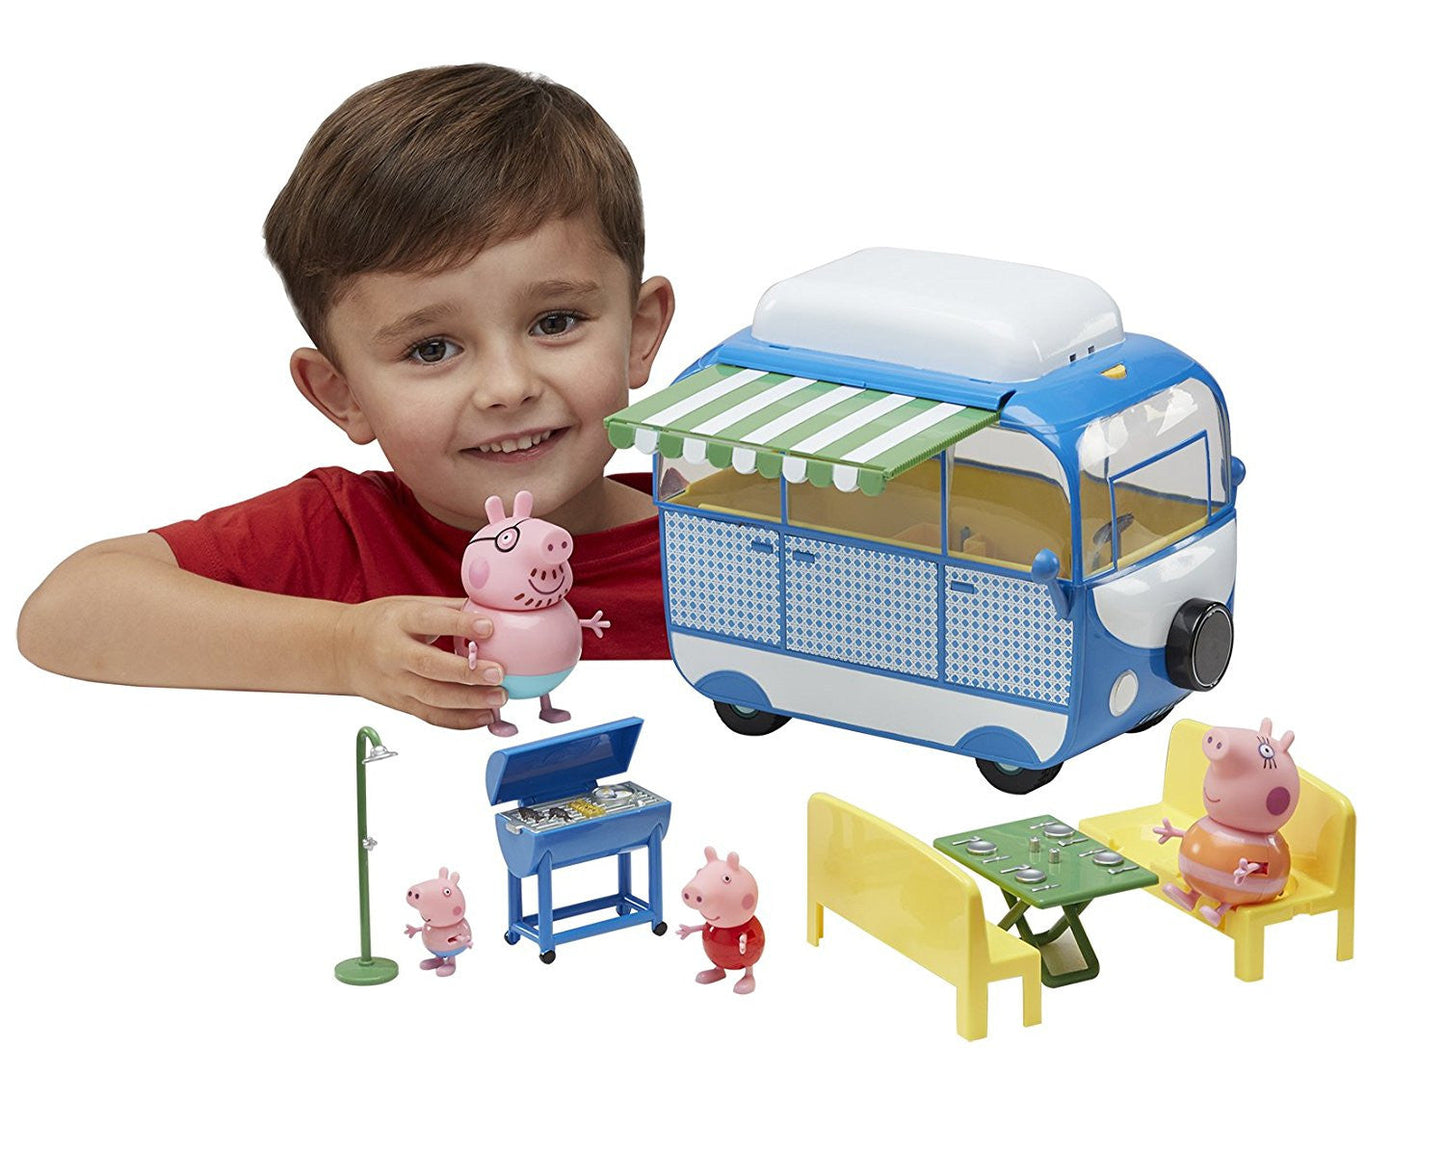 Peppa Pig Holiday Time Campervan Playset Toy - buy-online